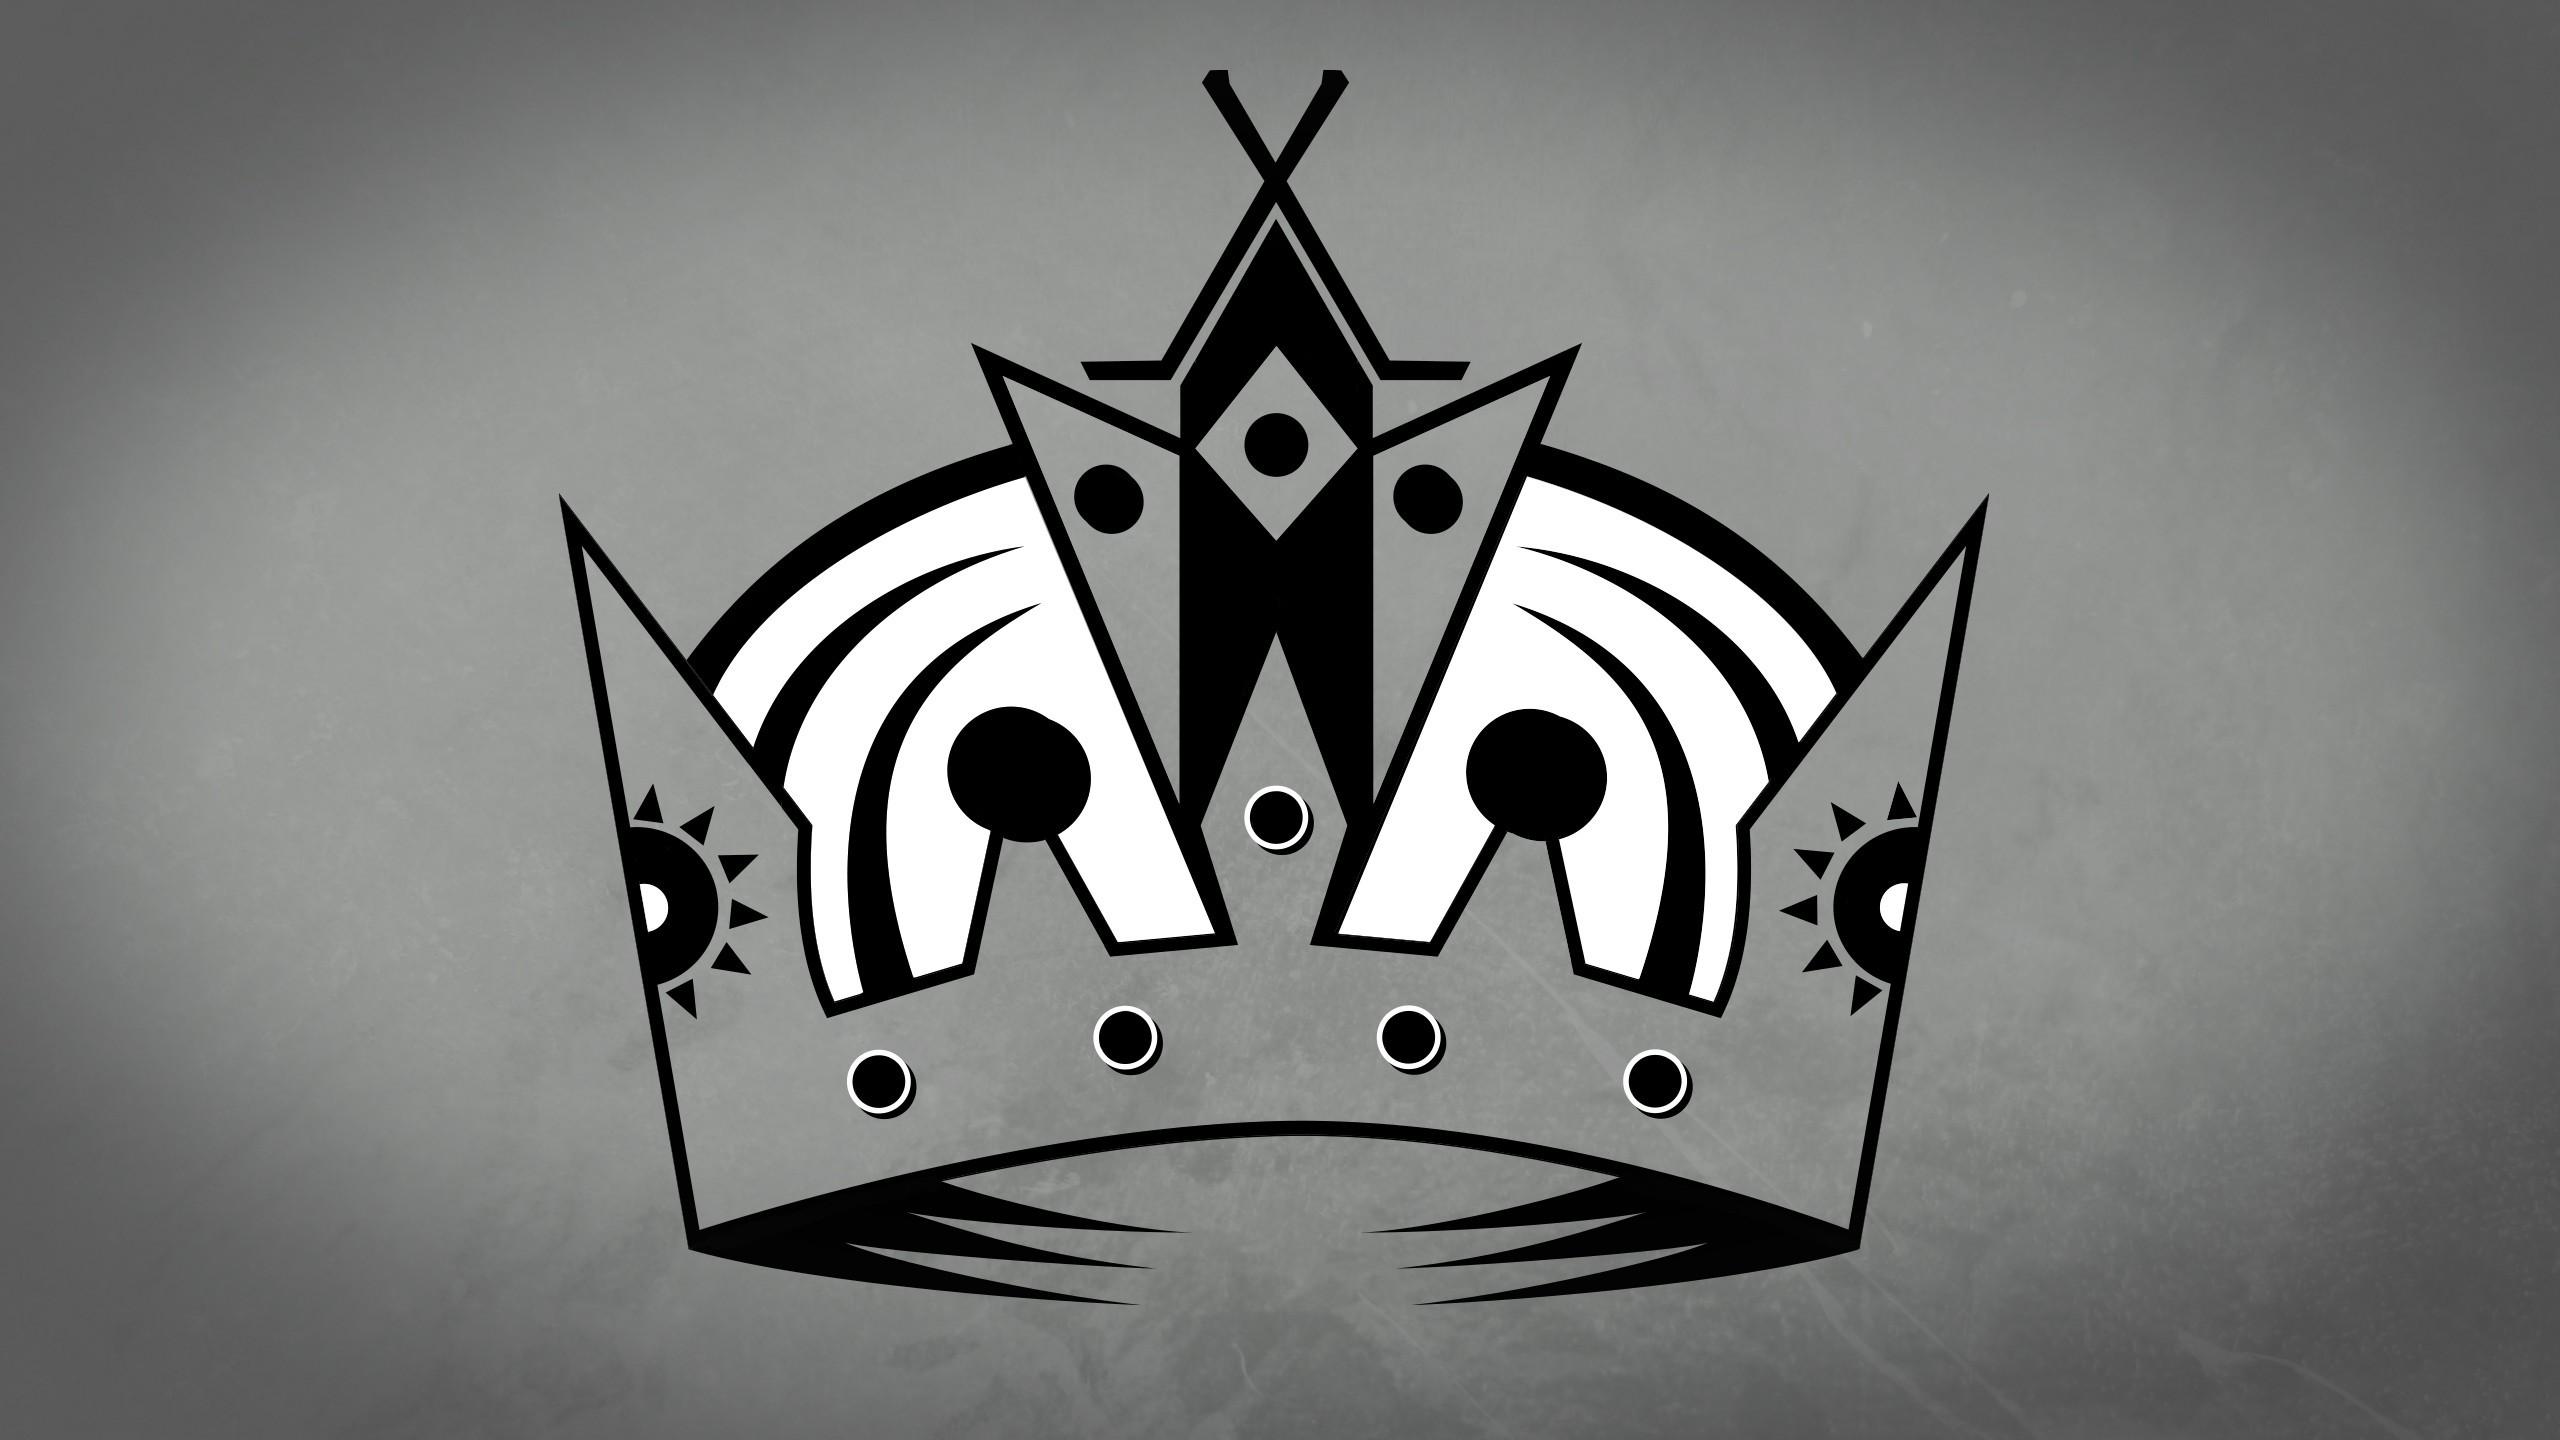 Download Free La Kings Logo Wallpaper